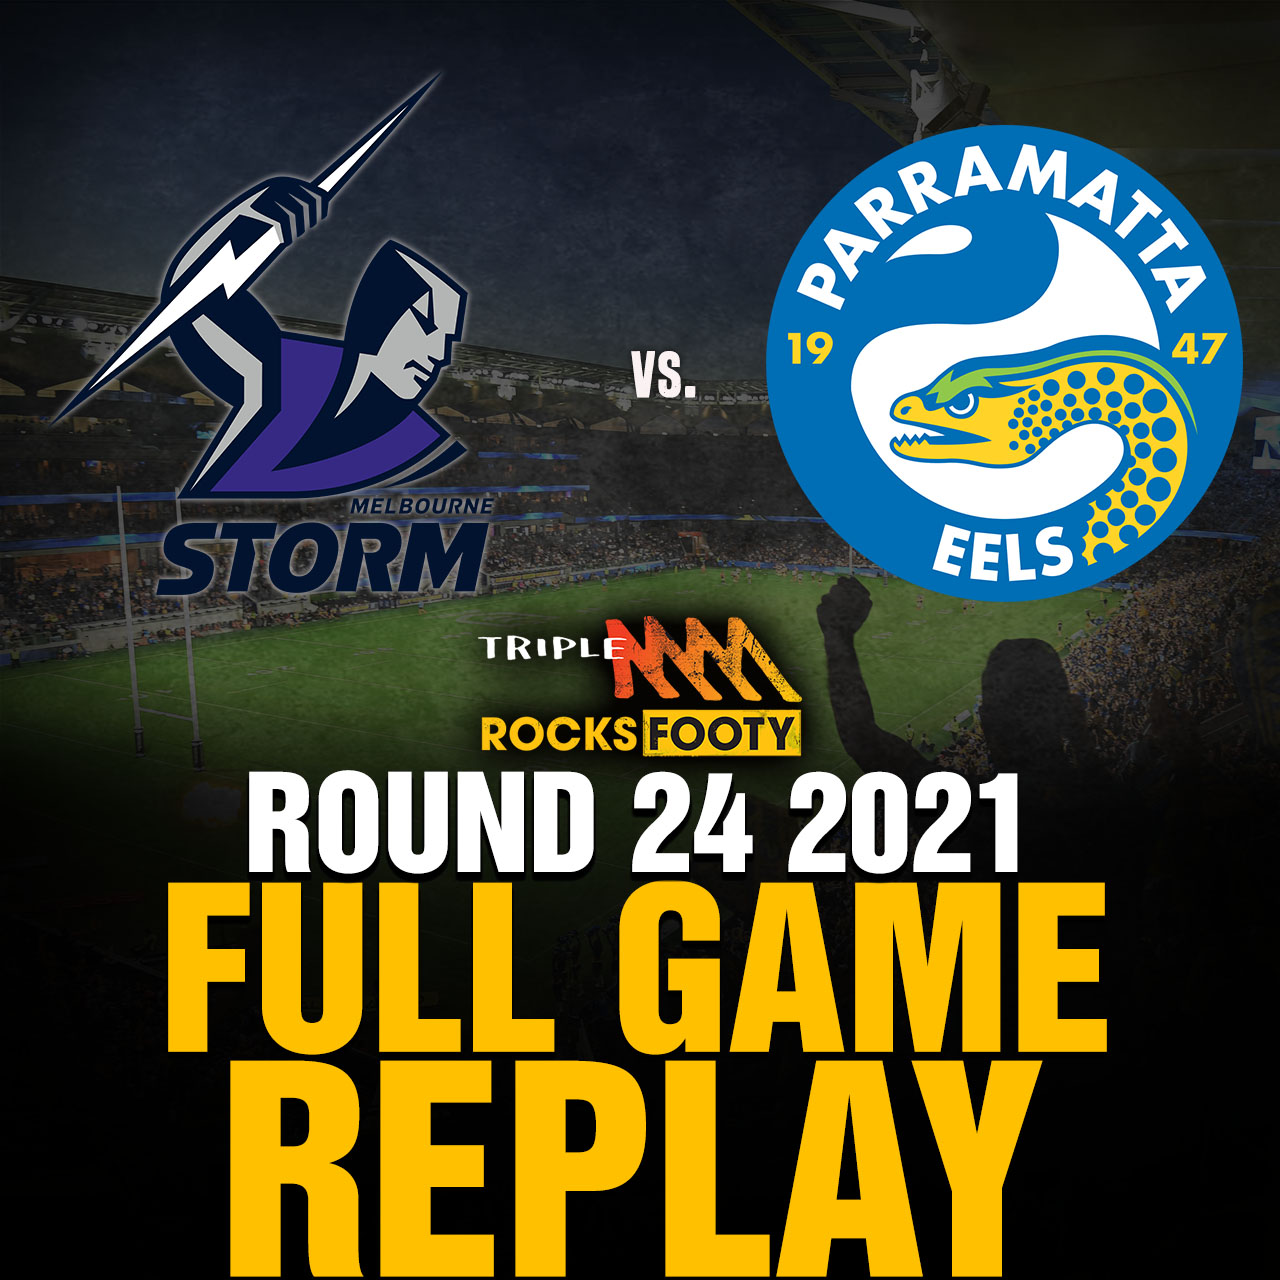 FULL GAME REPLAY | Melbourne Storm vs. Parramatta Eels